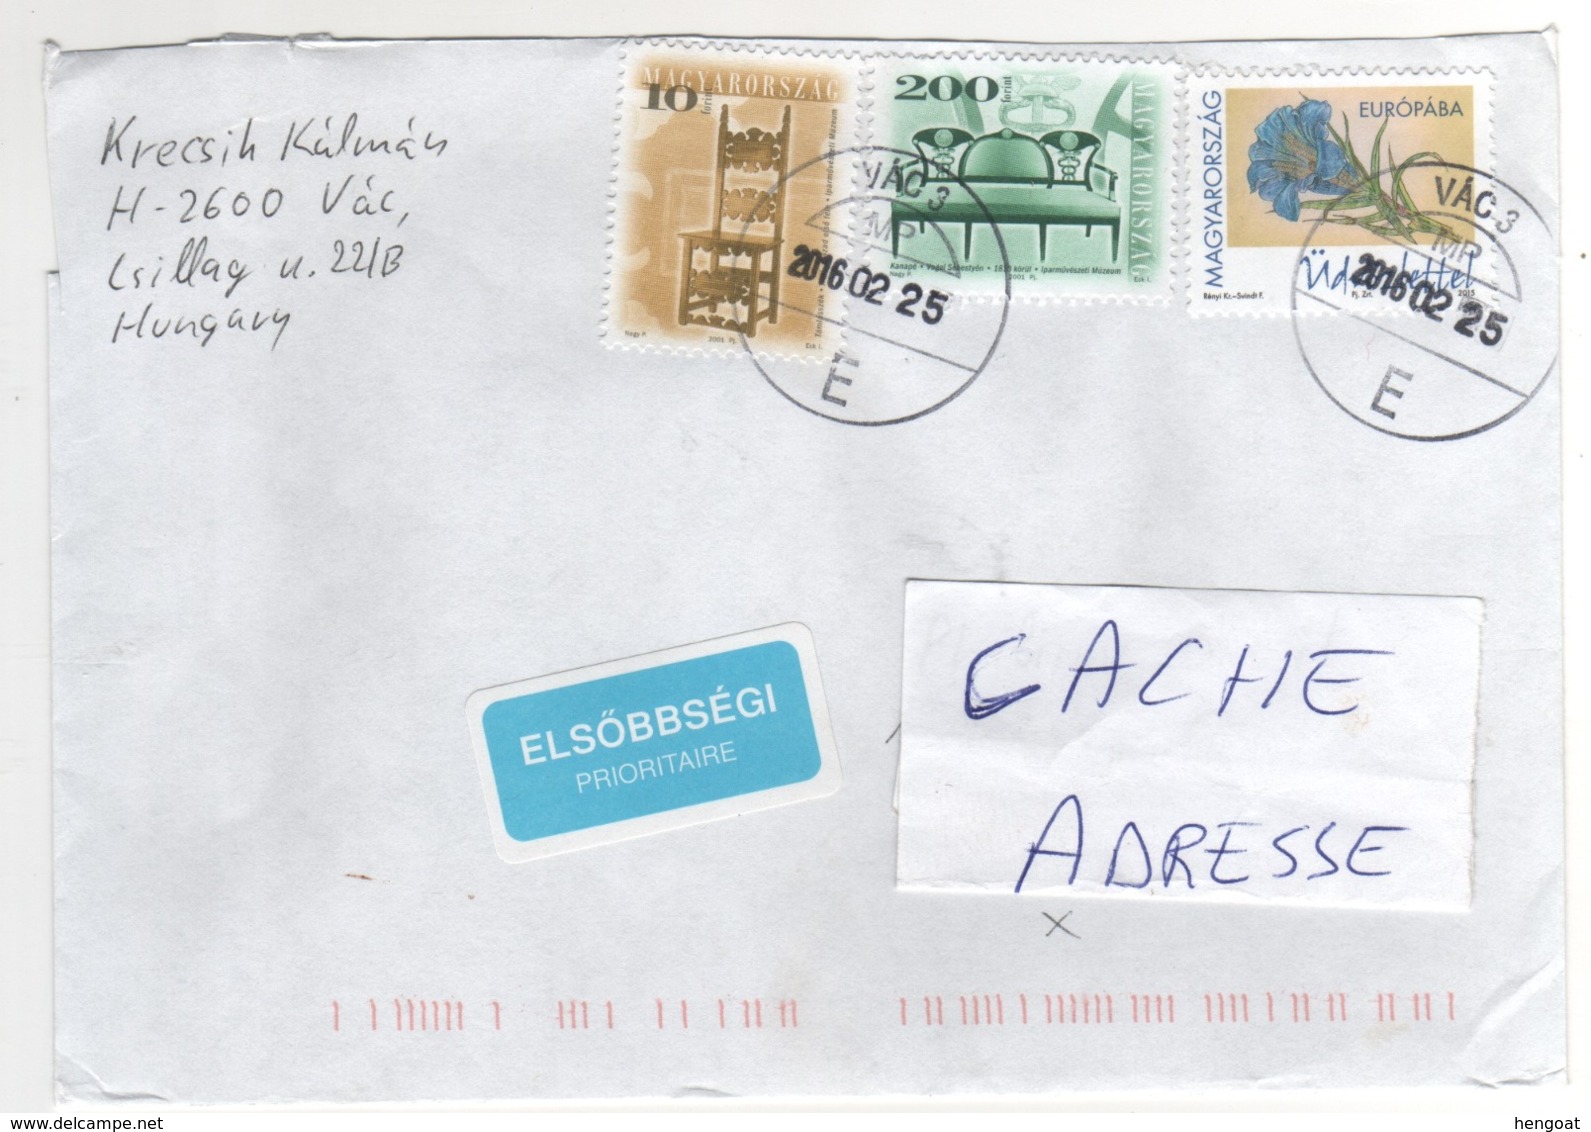 Beaux Timbres , Stamps ," Meubles ; EUROPA : Fleur  " Sur Lettre , Cover , Mail Du 25/02/2016  Pour La France - Covers & Documents